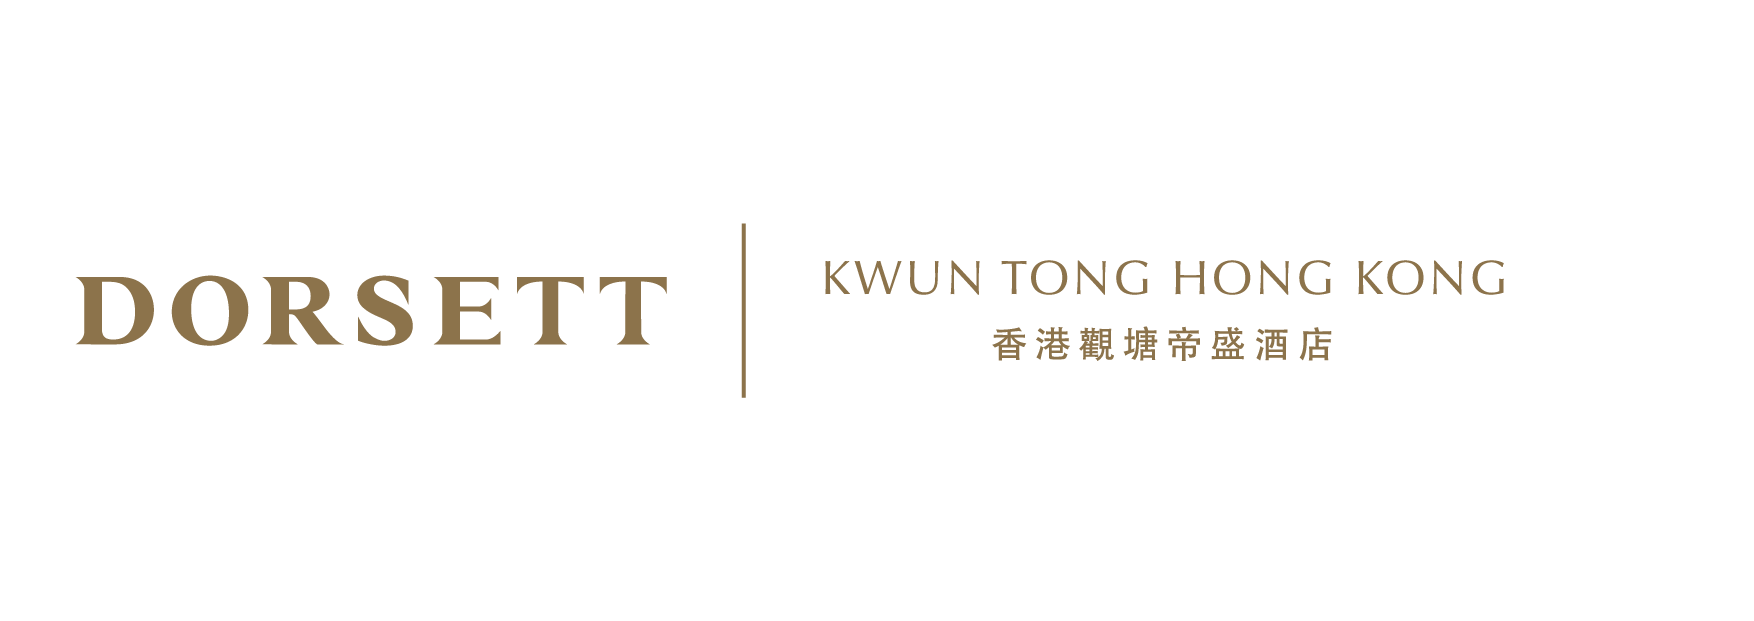 Dorsett Kwun Tong